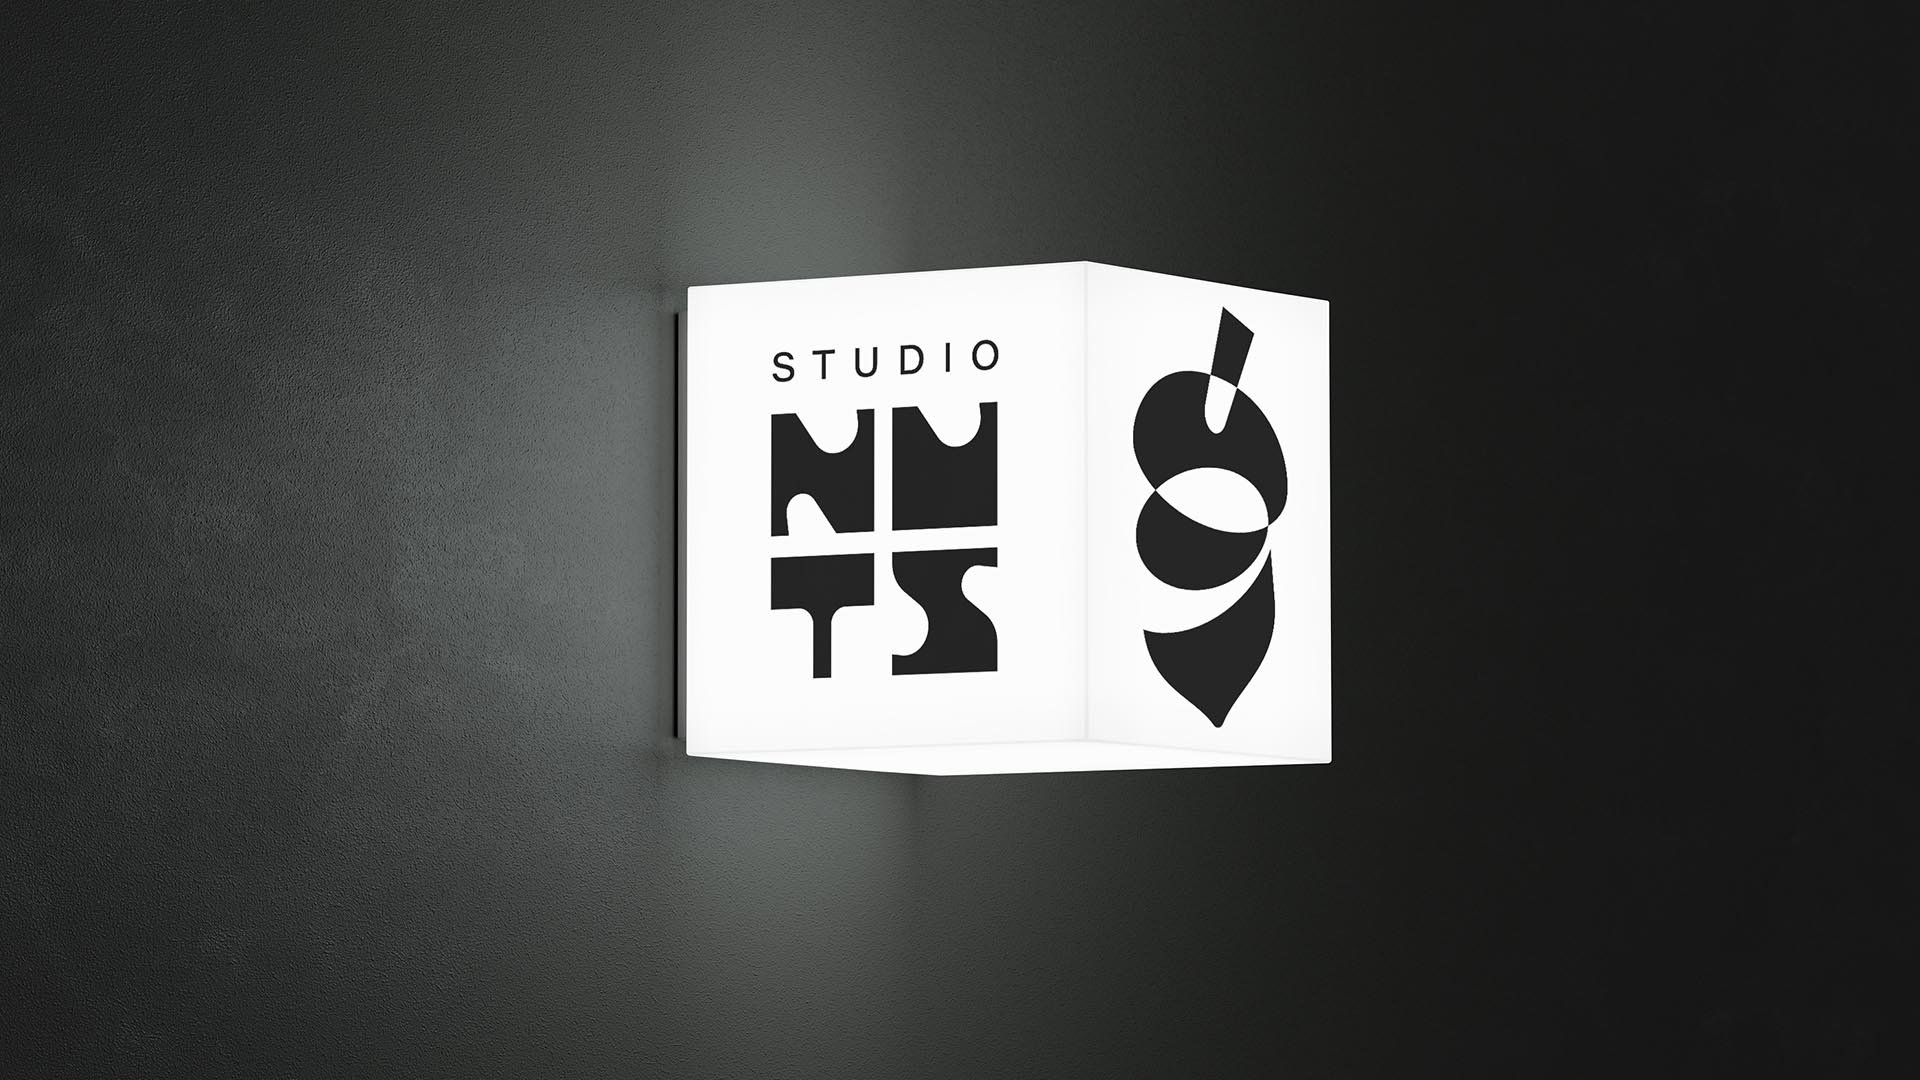 estudio-mola-studio-nuts-017-sinalizaco.jpg